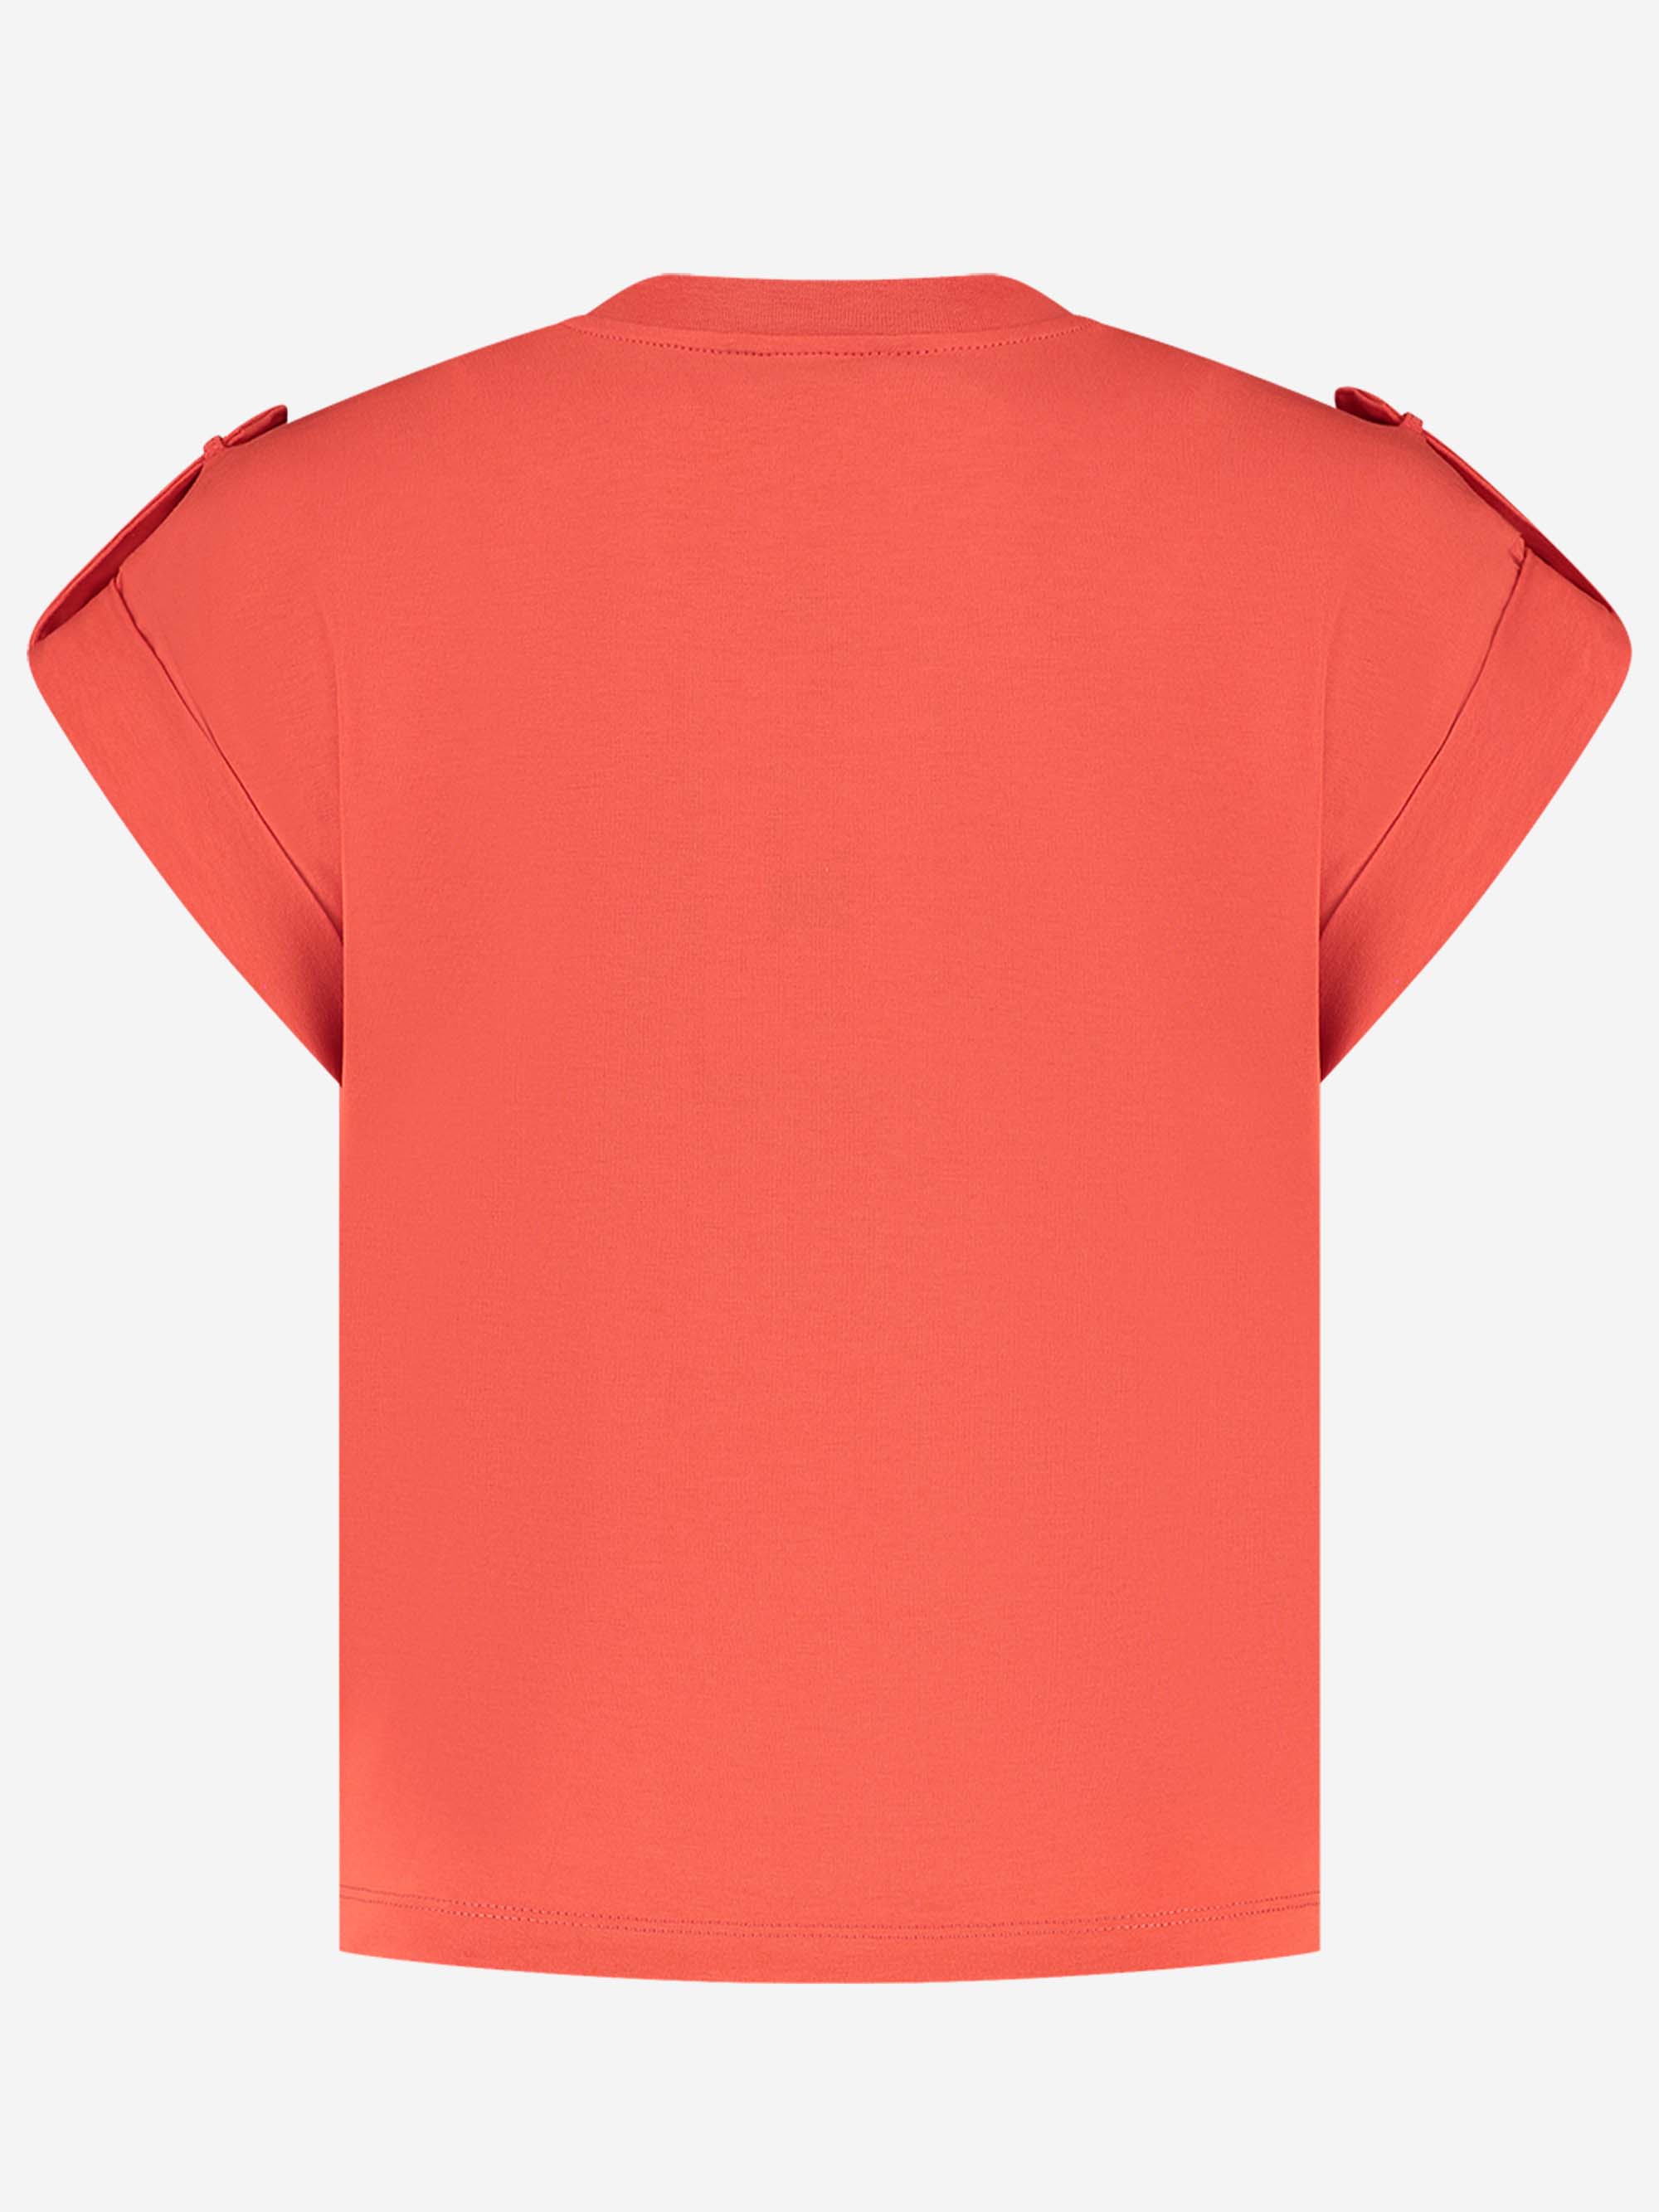 Epaulette Plate T-Shirt